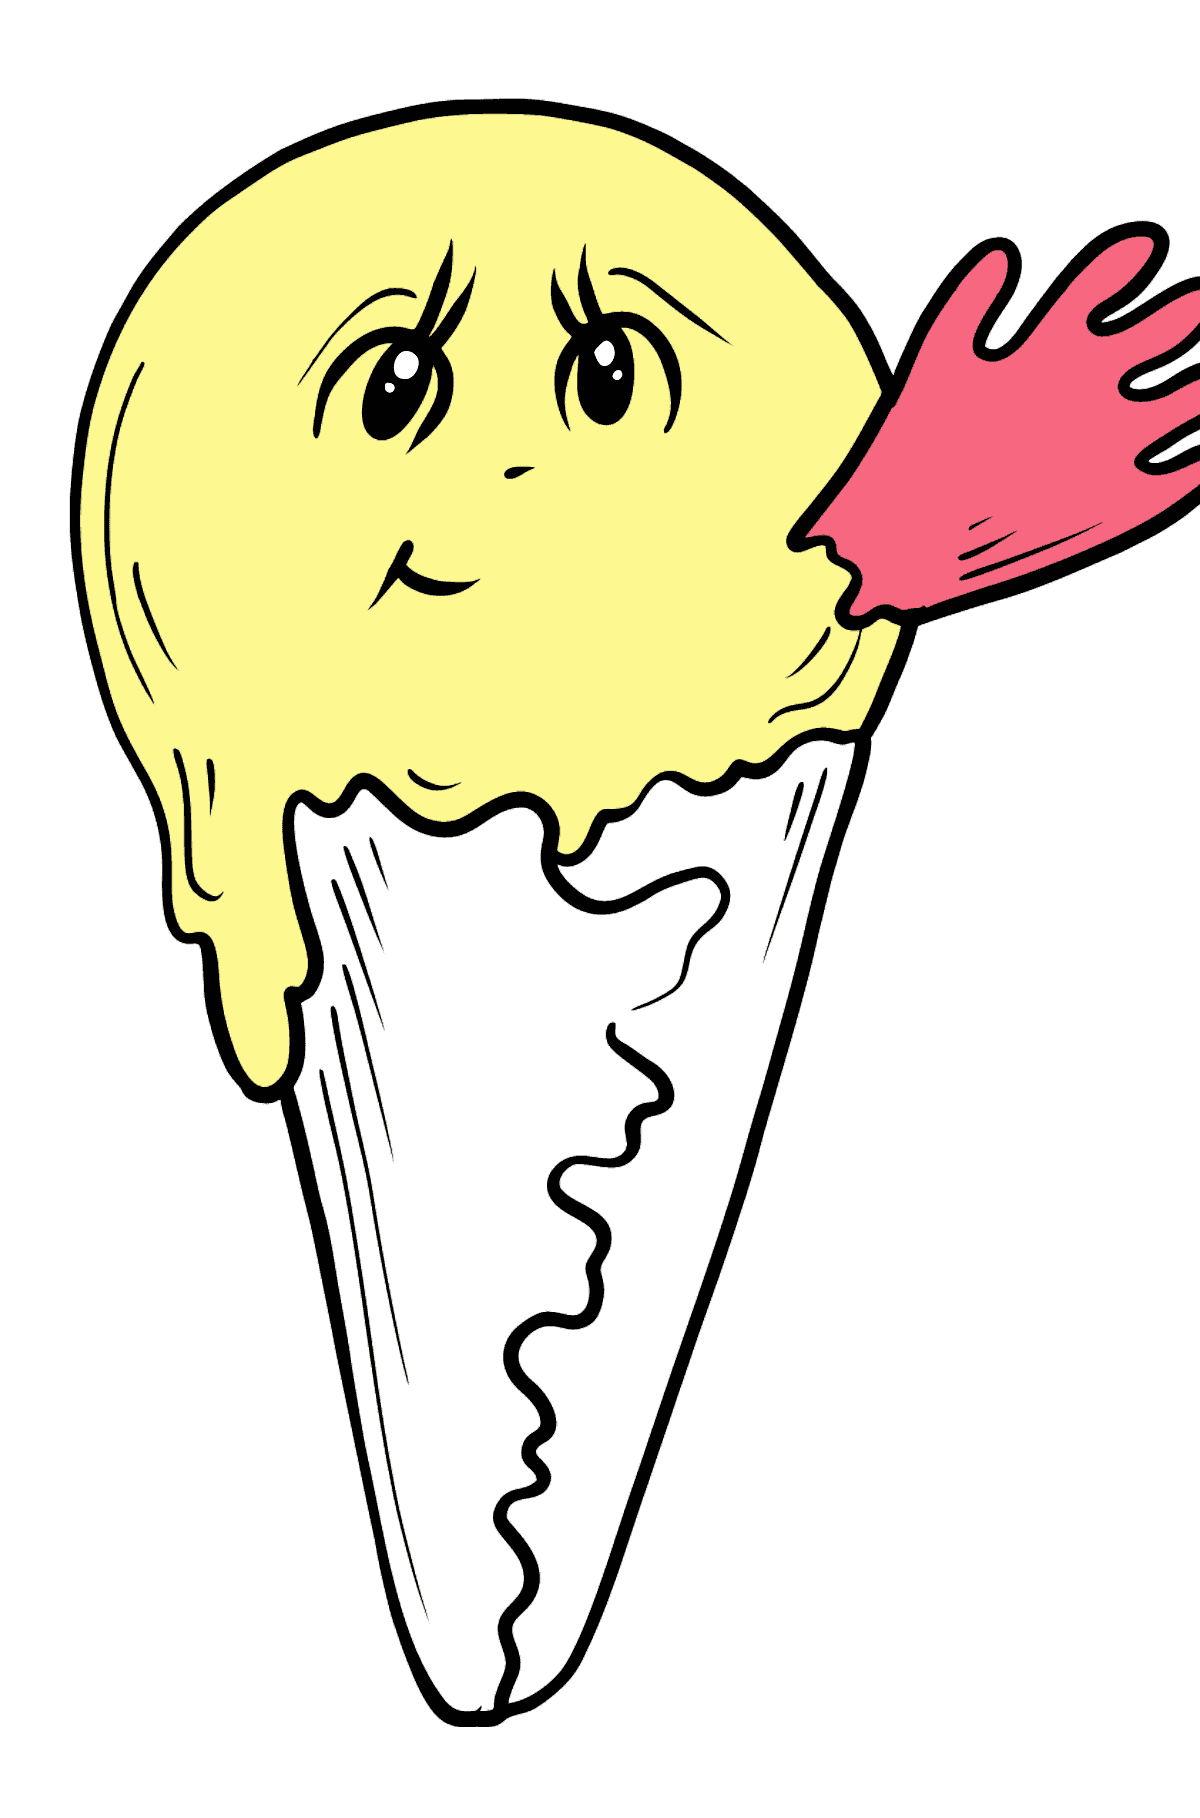 Omalovánka banánová zmrzlina s očima - Omalovánky pro děti